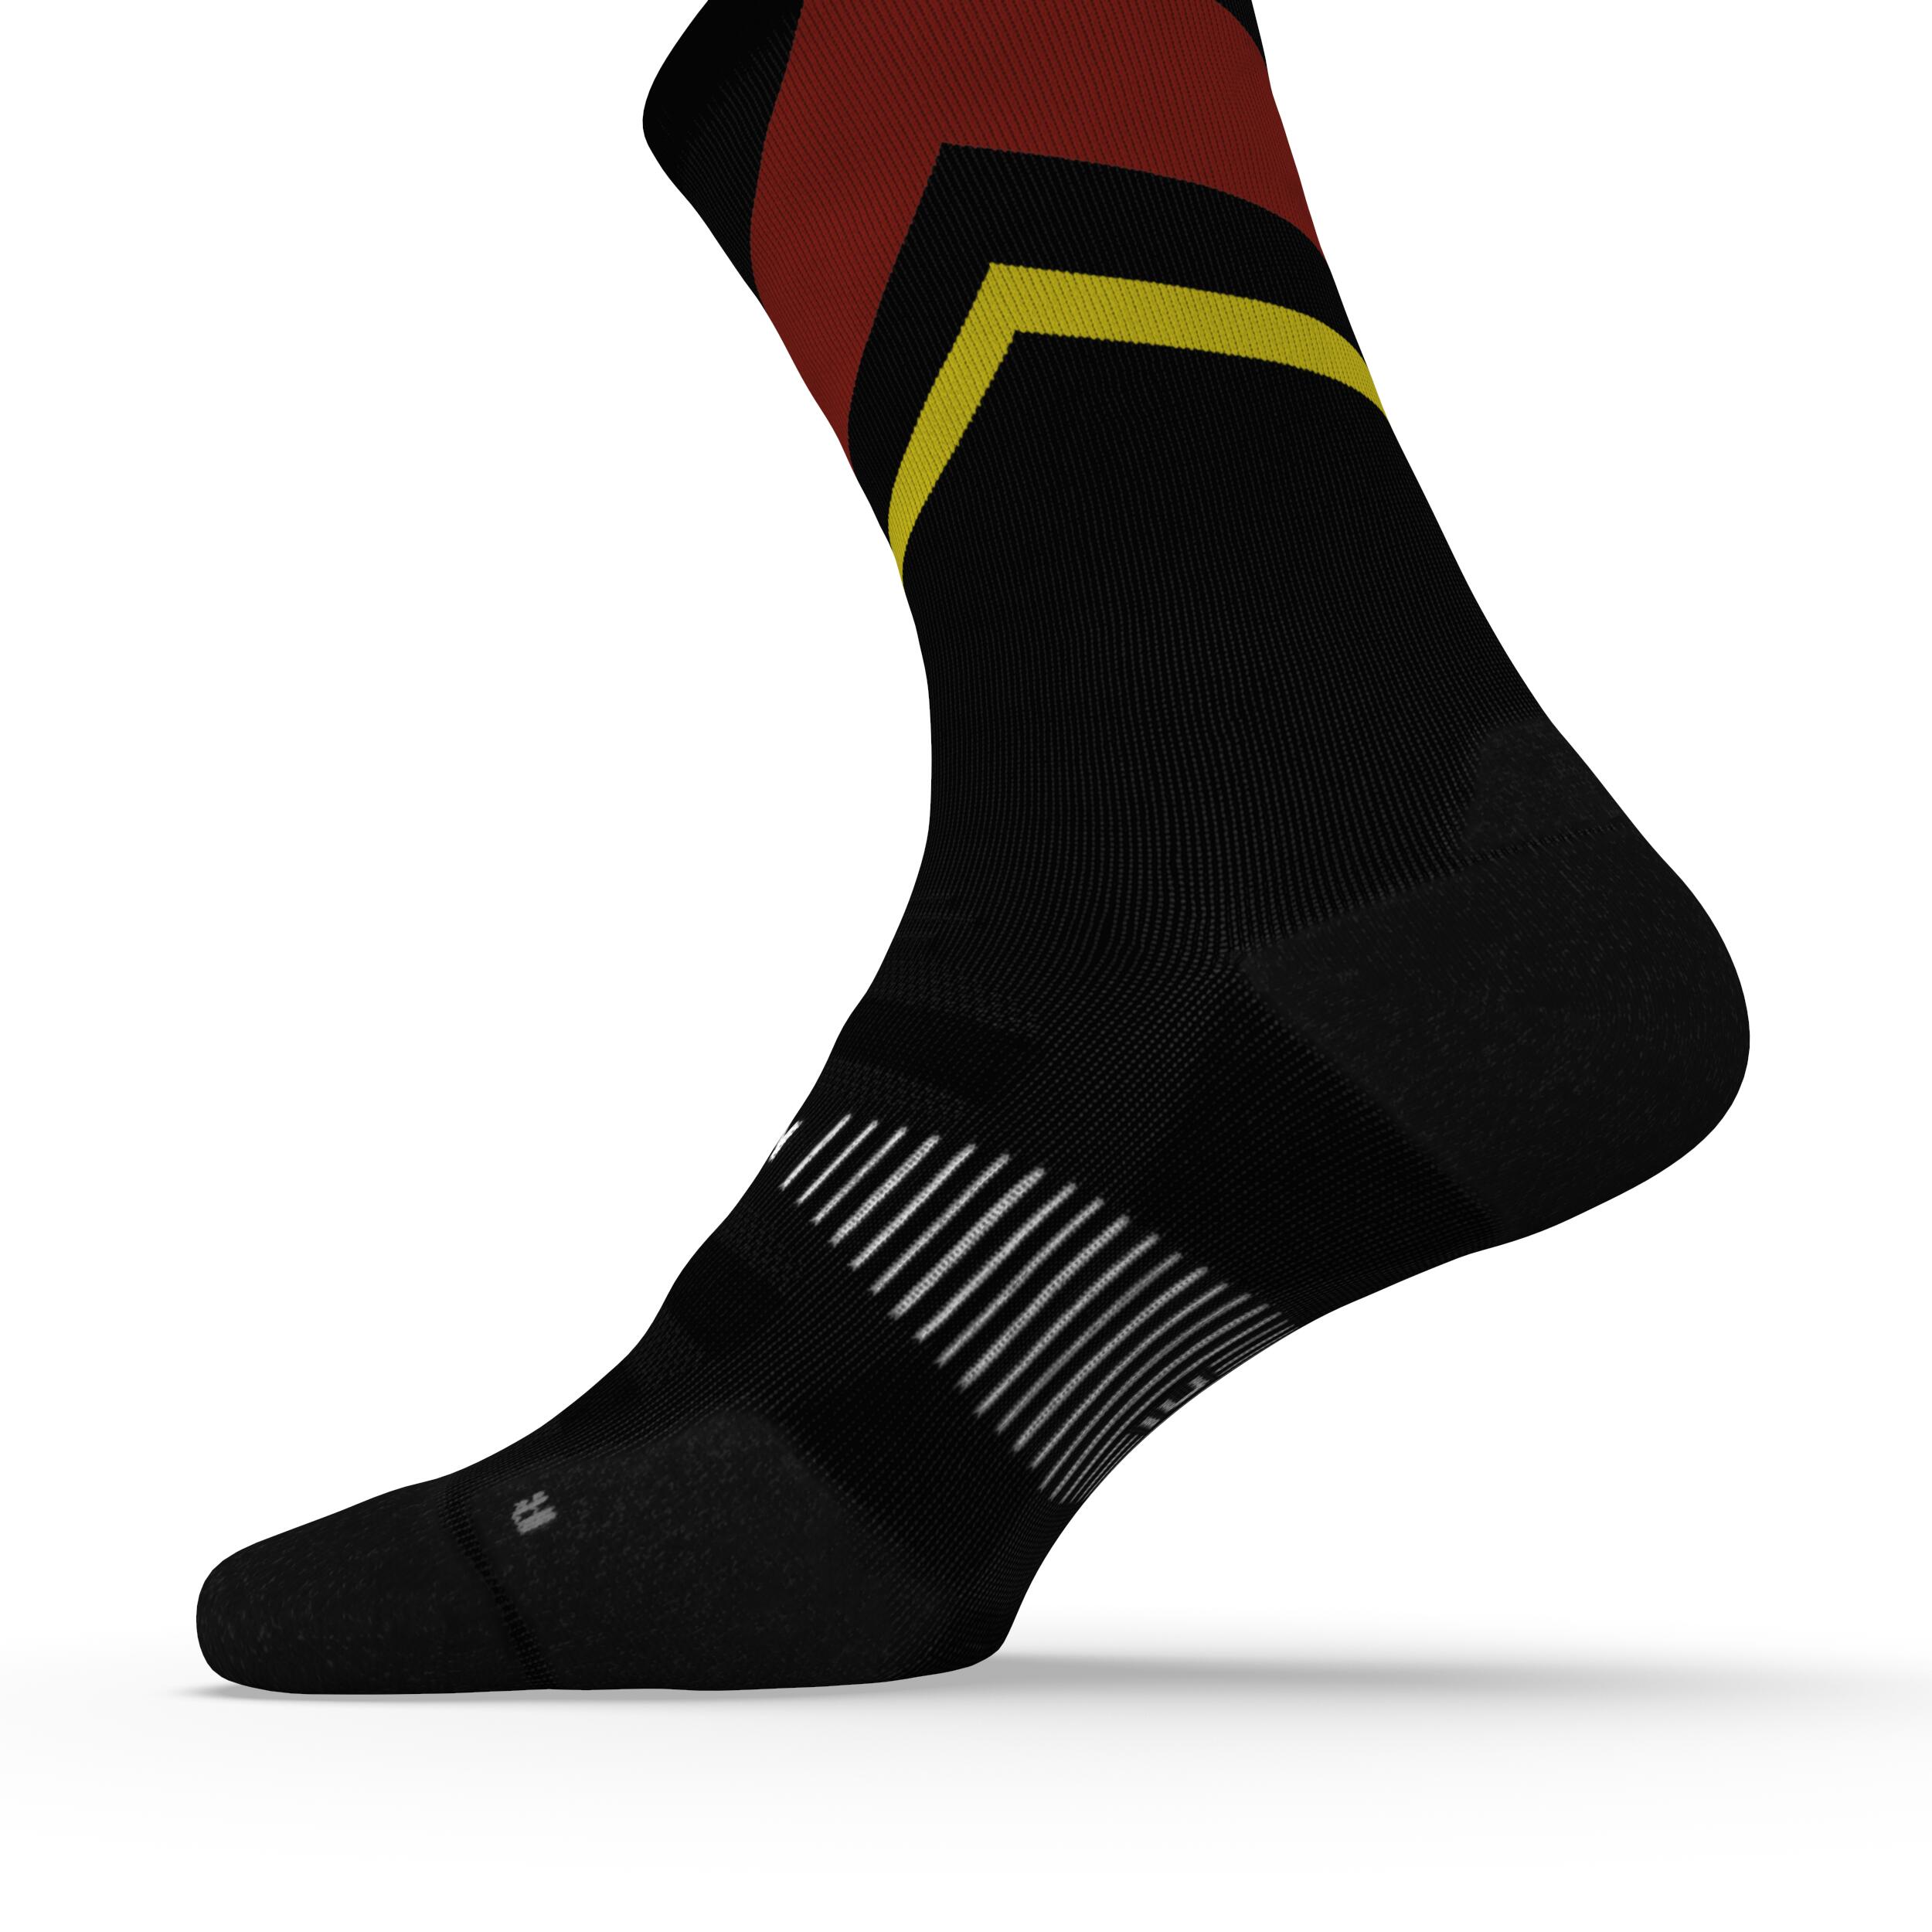 Run900 Mid-Calf Thick Running Socks - Black/Red/Yellow 5/6